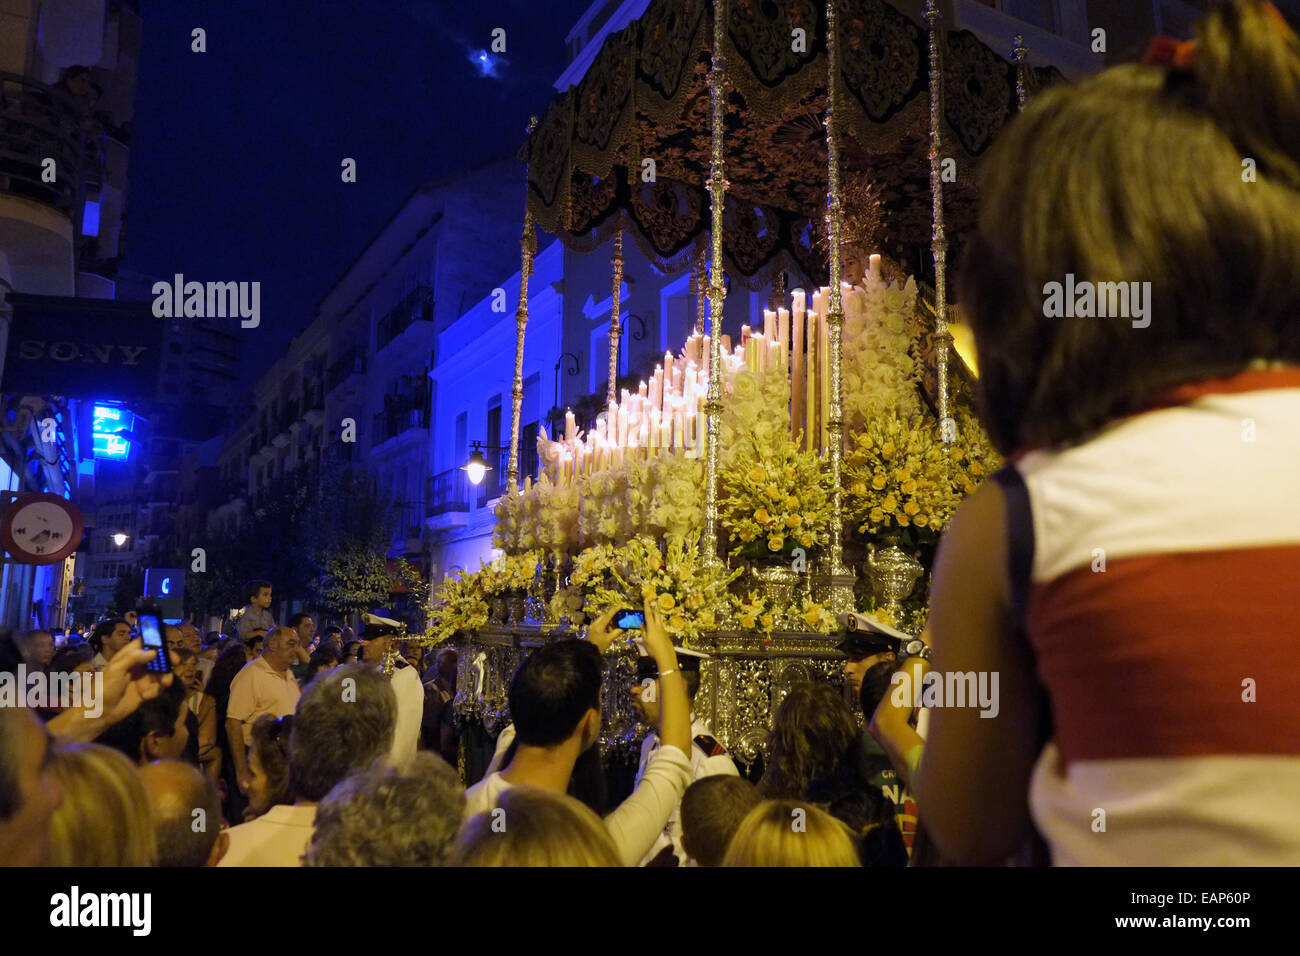 Mars religieux de la "Virgen del Rocio' dans le centre-ville de Huelva en Espagne. Montrer aux gens à prendre des photos avec des téléphones cellulaires Banque D'Images